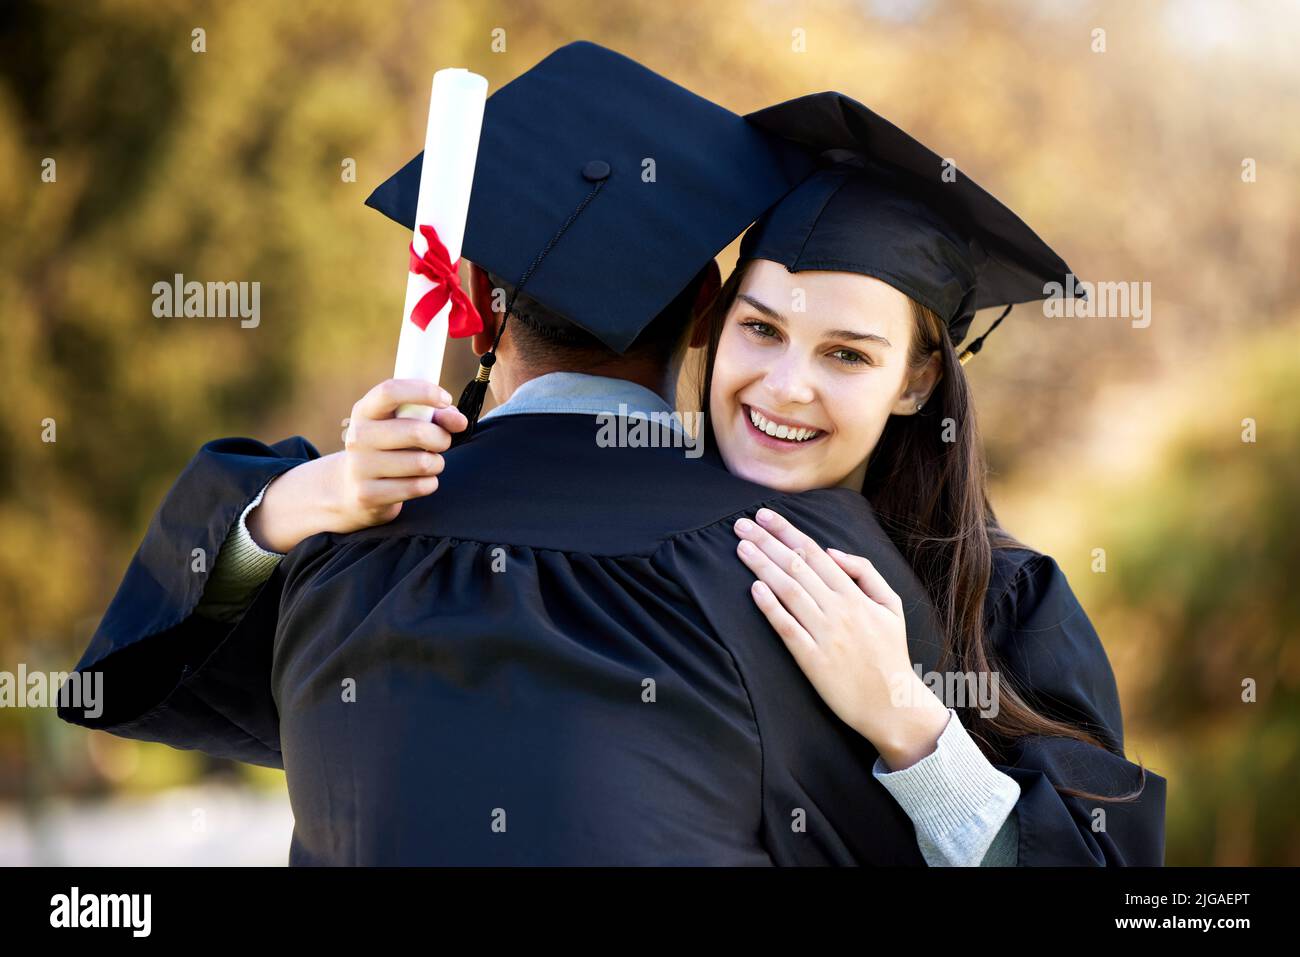 Ich bin gespannt, was wir gemeinsam noch erreichen können. Porträt einer jungen Frau, die ihre Freundin am Abschlusstag umarmt. Stockfoto